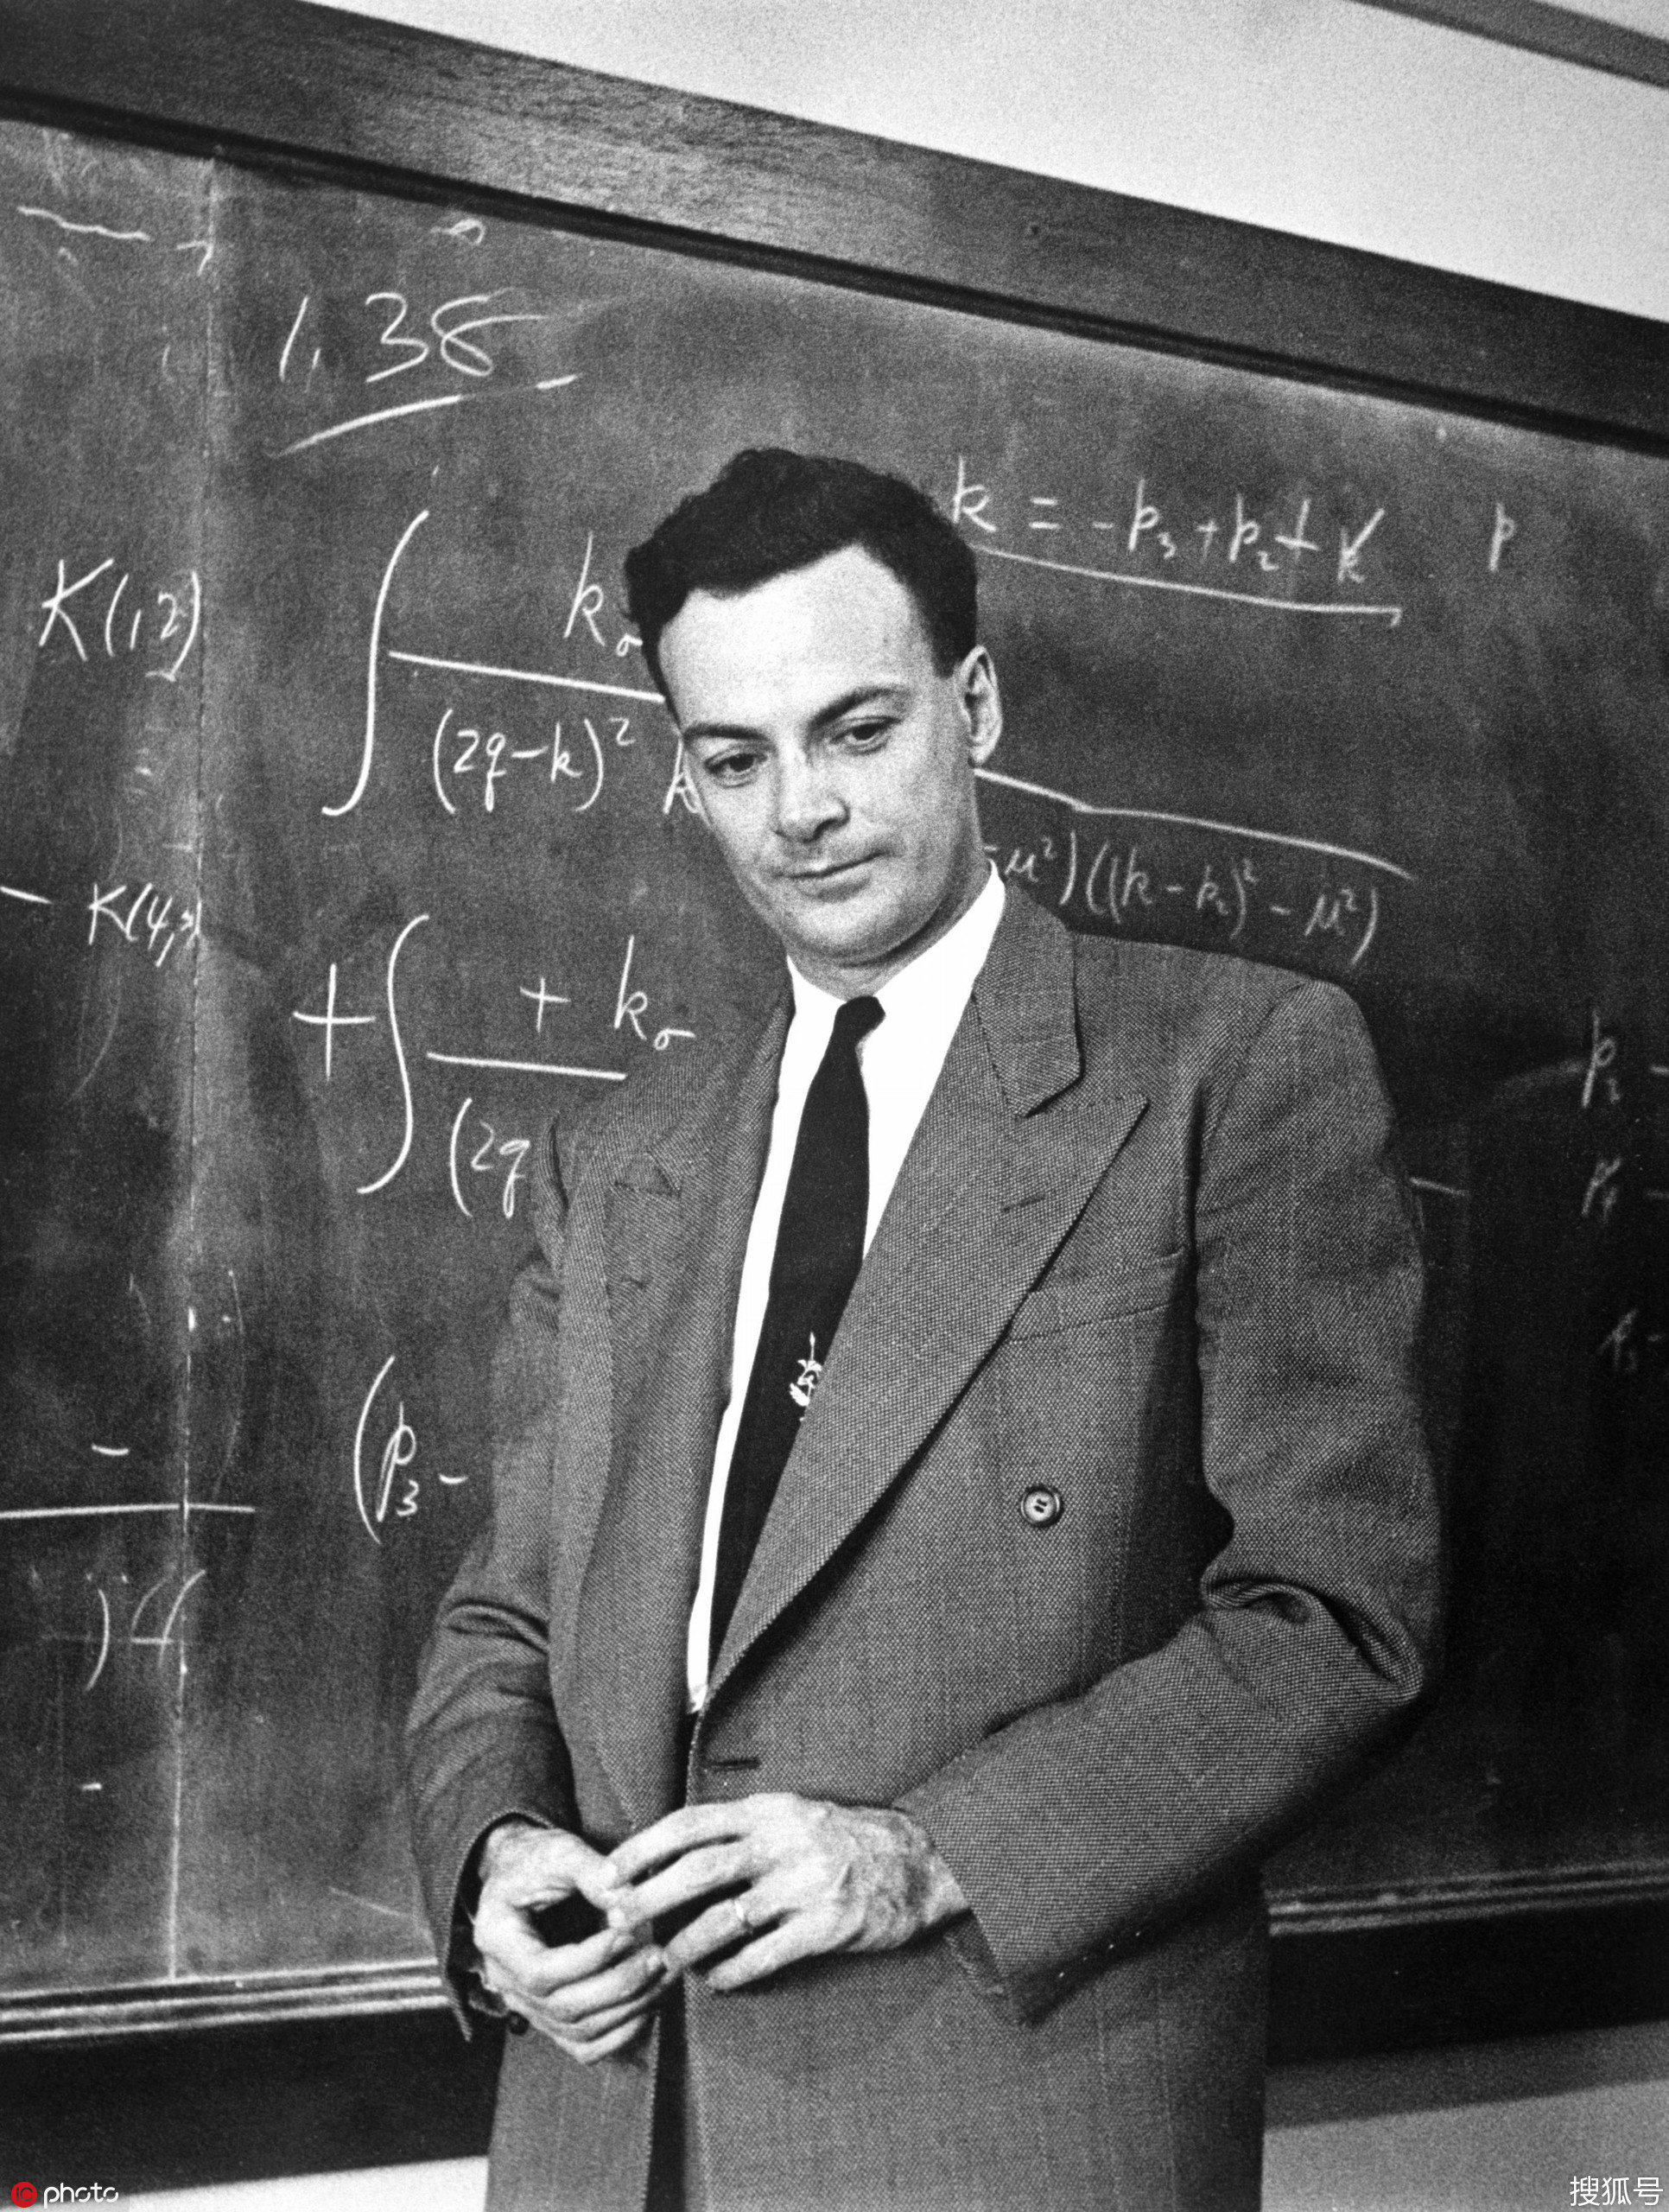 有史以来十位最伟大的物理学家之一:理查德-费曼